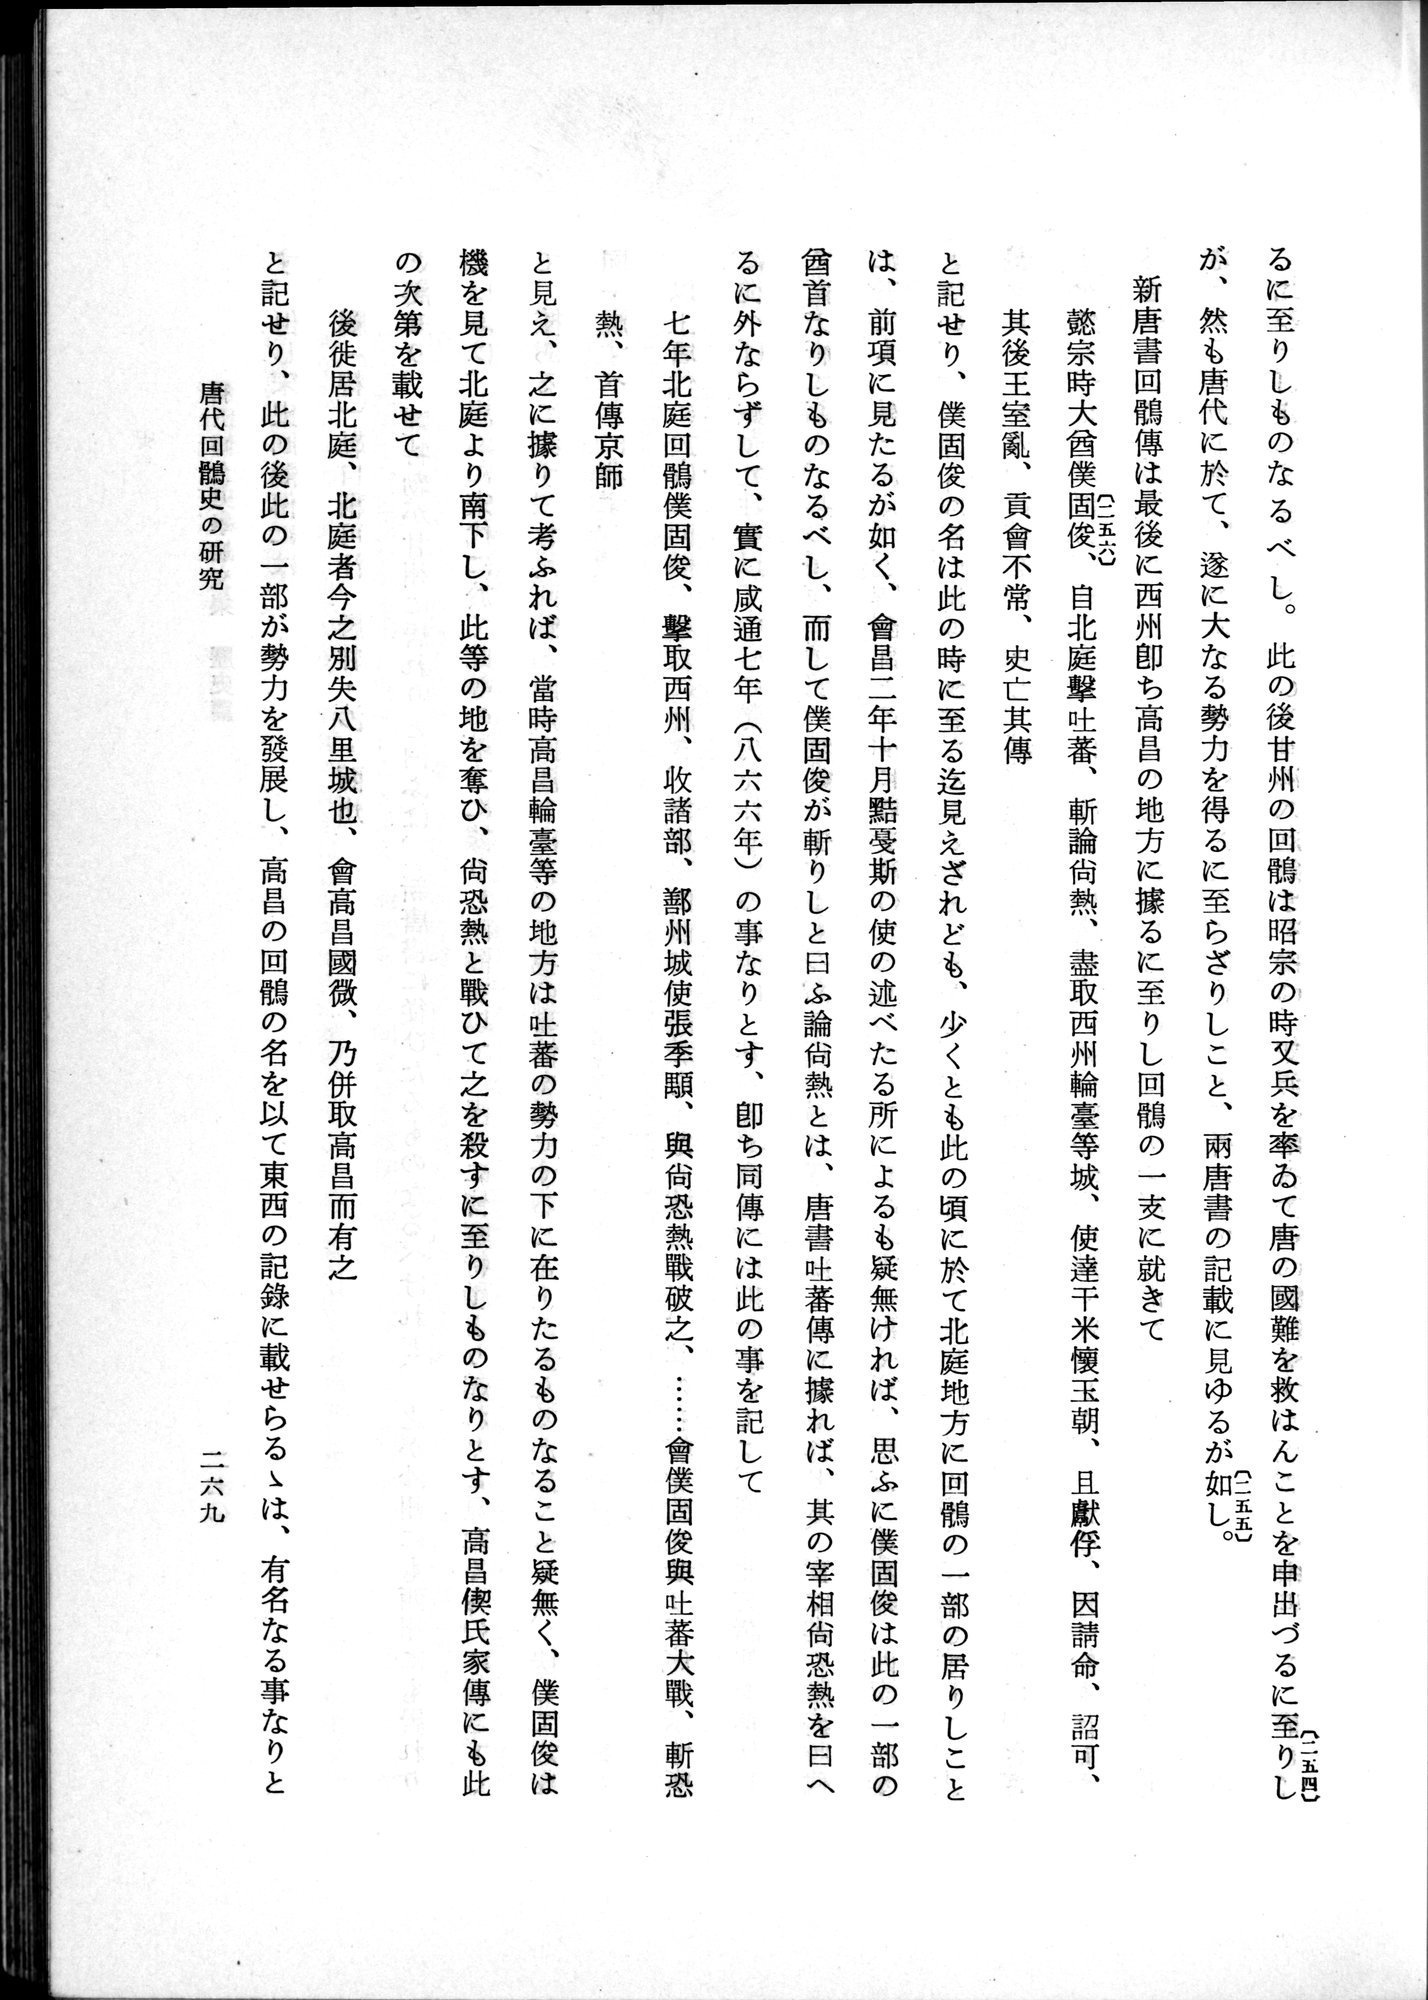 羽田博士史学論文集 : vol.1 / Page 307 (Grayscale High Resolution Image)